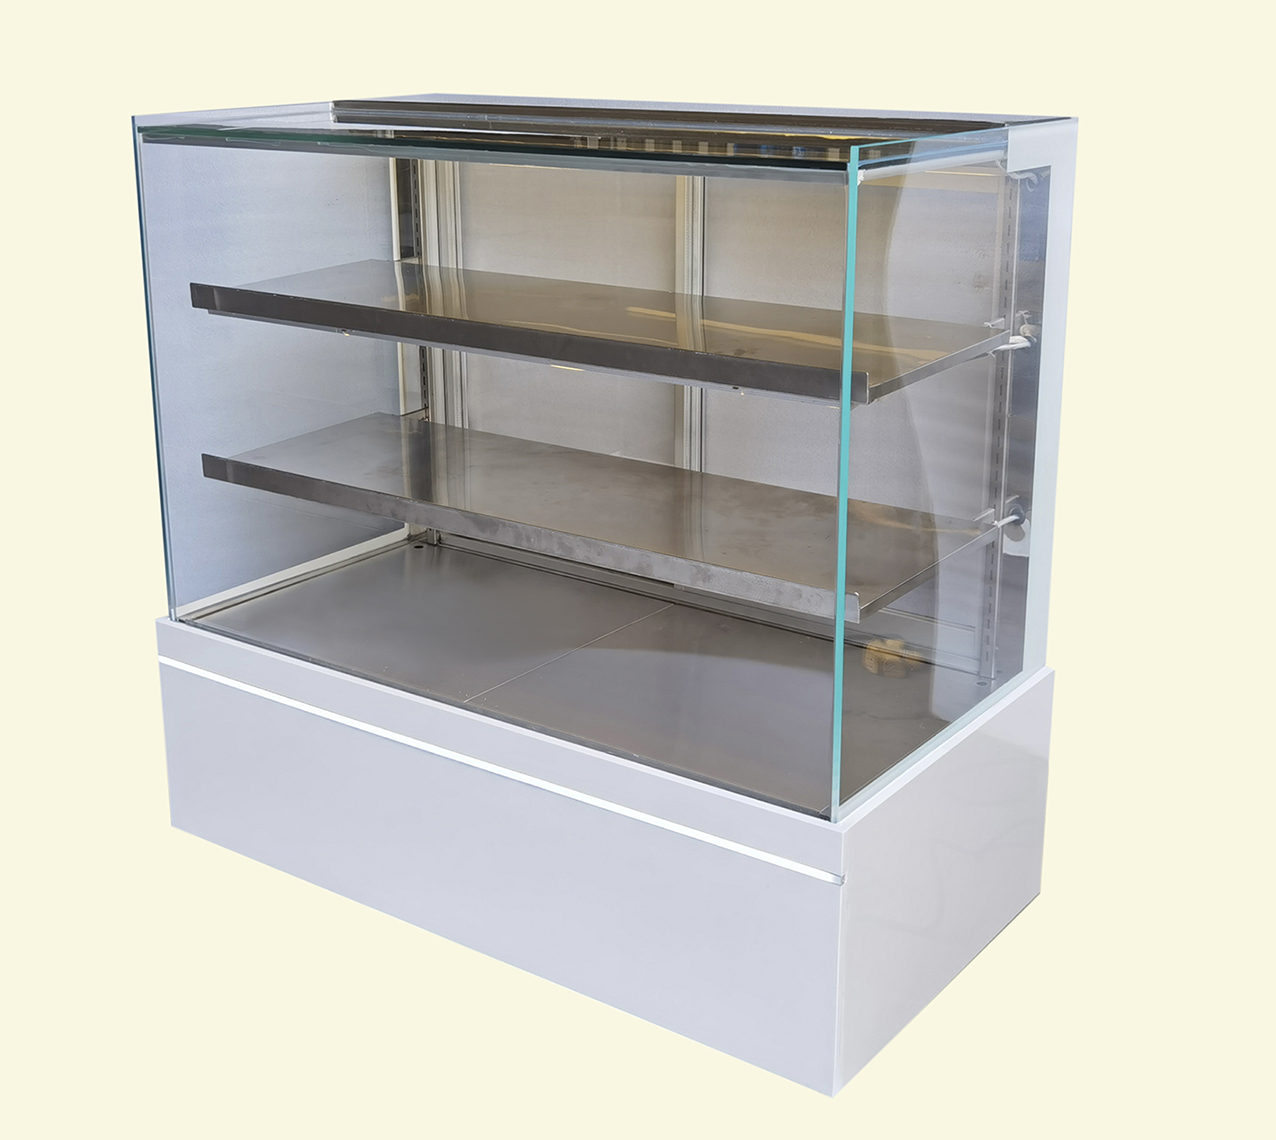 Room temperature pastry display cabinetXID-CWD